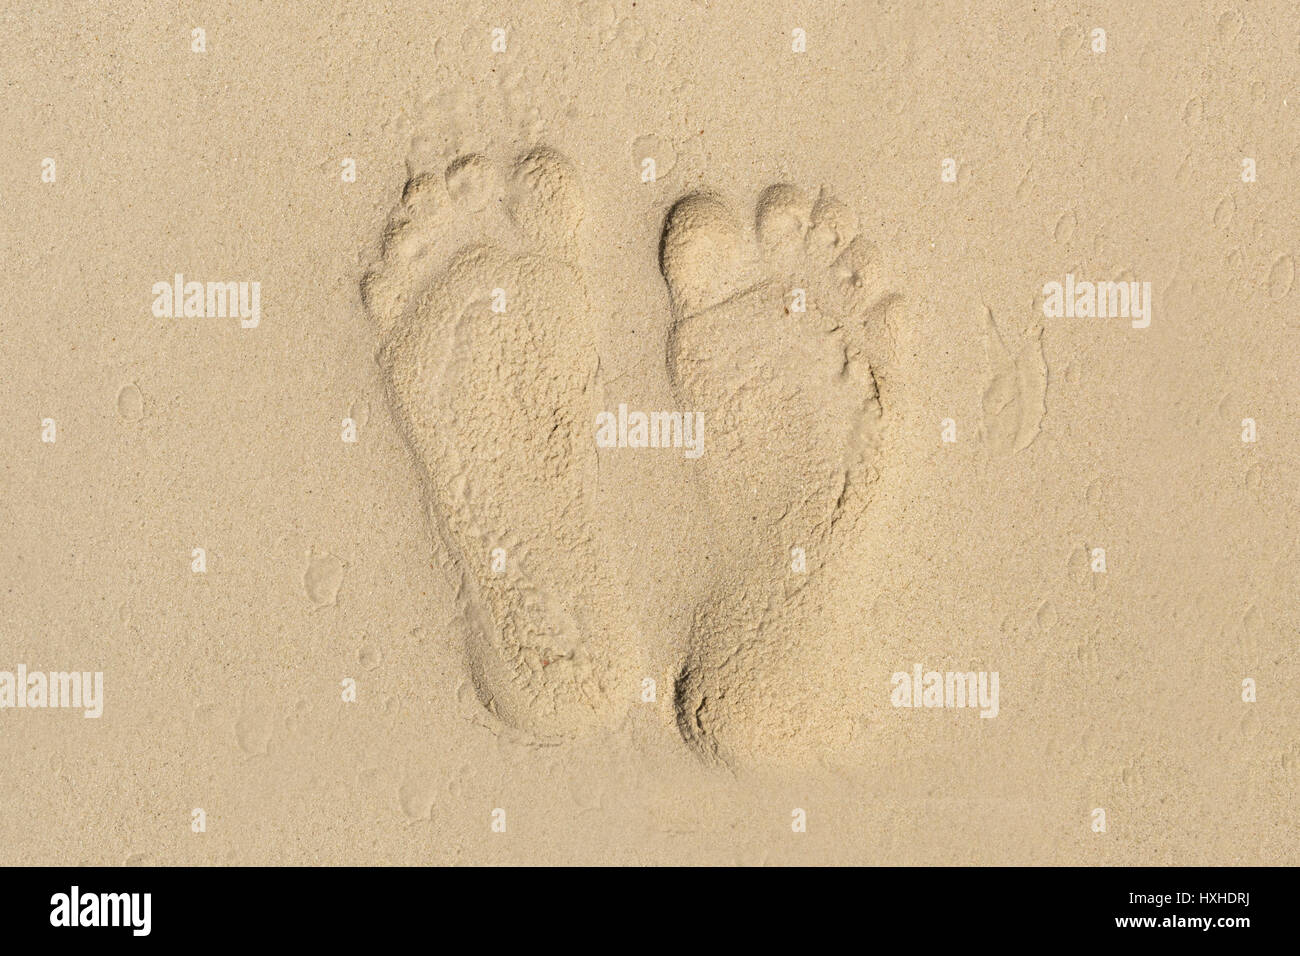 Fußdruck auf Sand in Dschibuti Moussa Maskali Strand Stockfoto